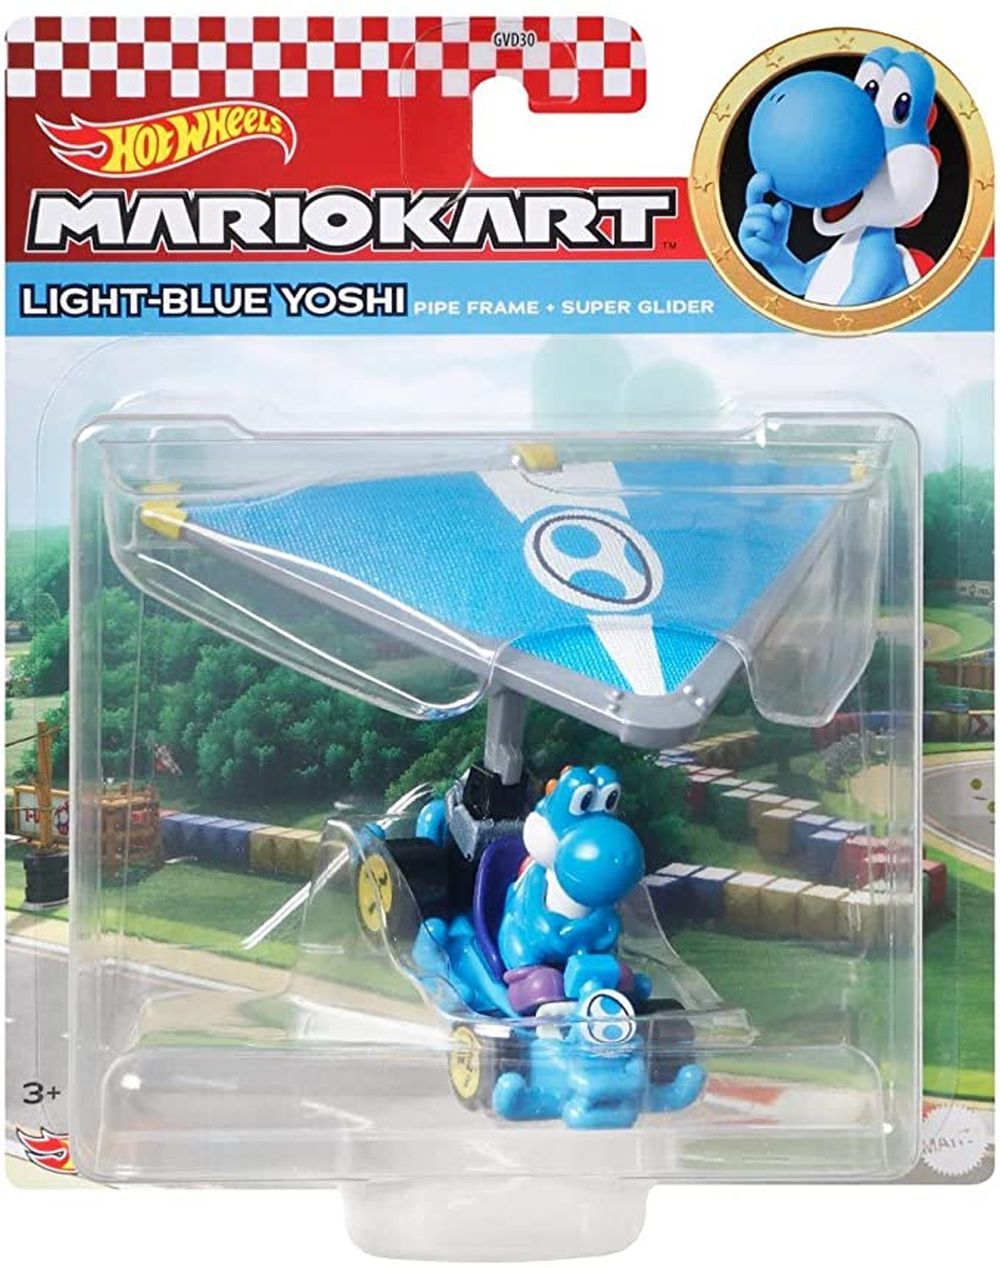 MATTEL Light-blue Yoshi Mariokart Super Glider - DIE CAST